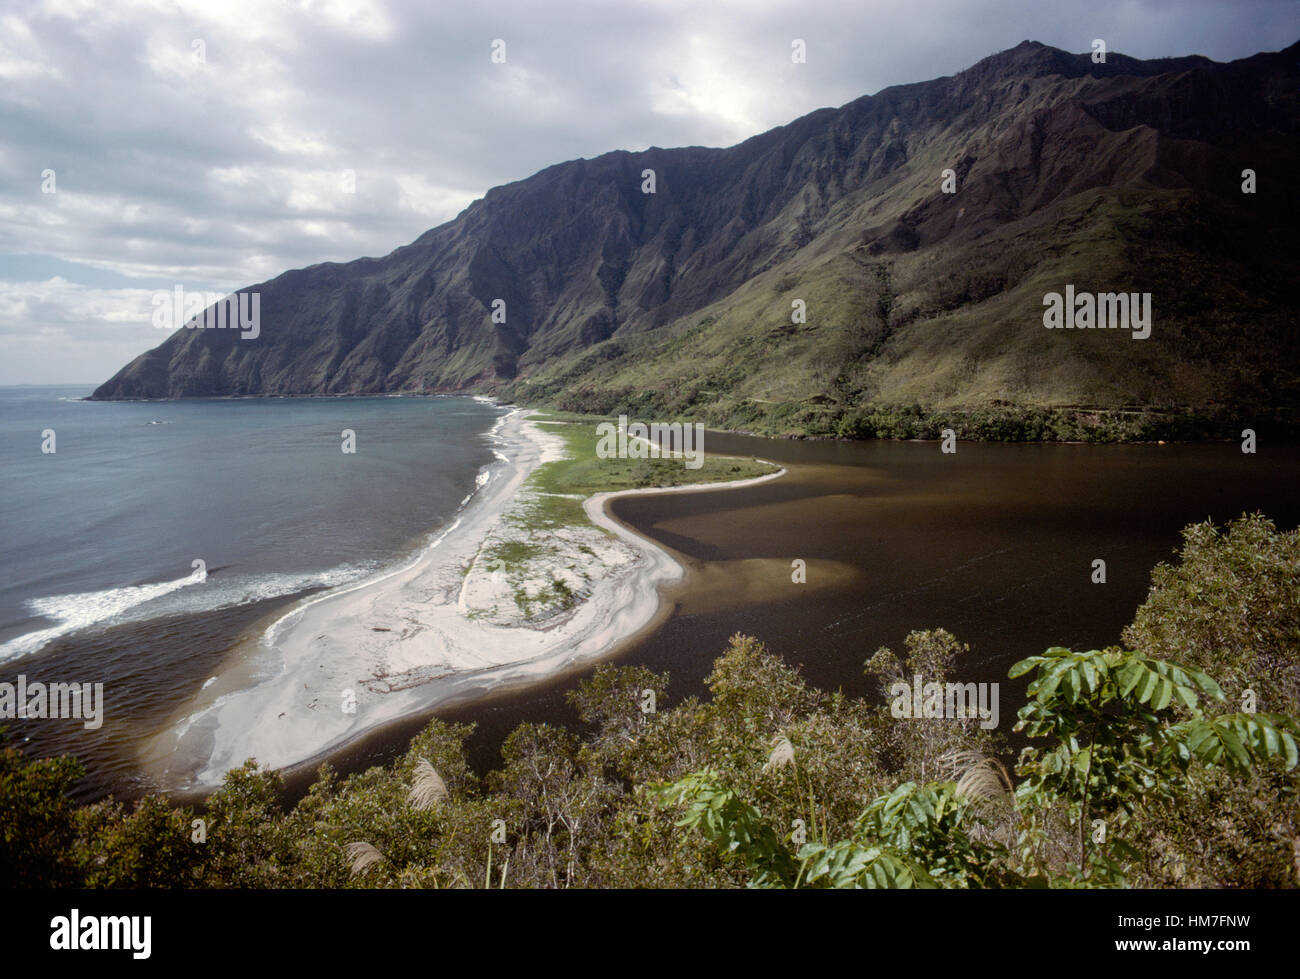 Foce del fiume Ouaieme nella baia dello stesso nome, Nuova Caledonia, territorio di oltremare della Repubblica francese. Foto Stock